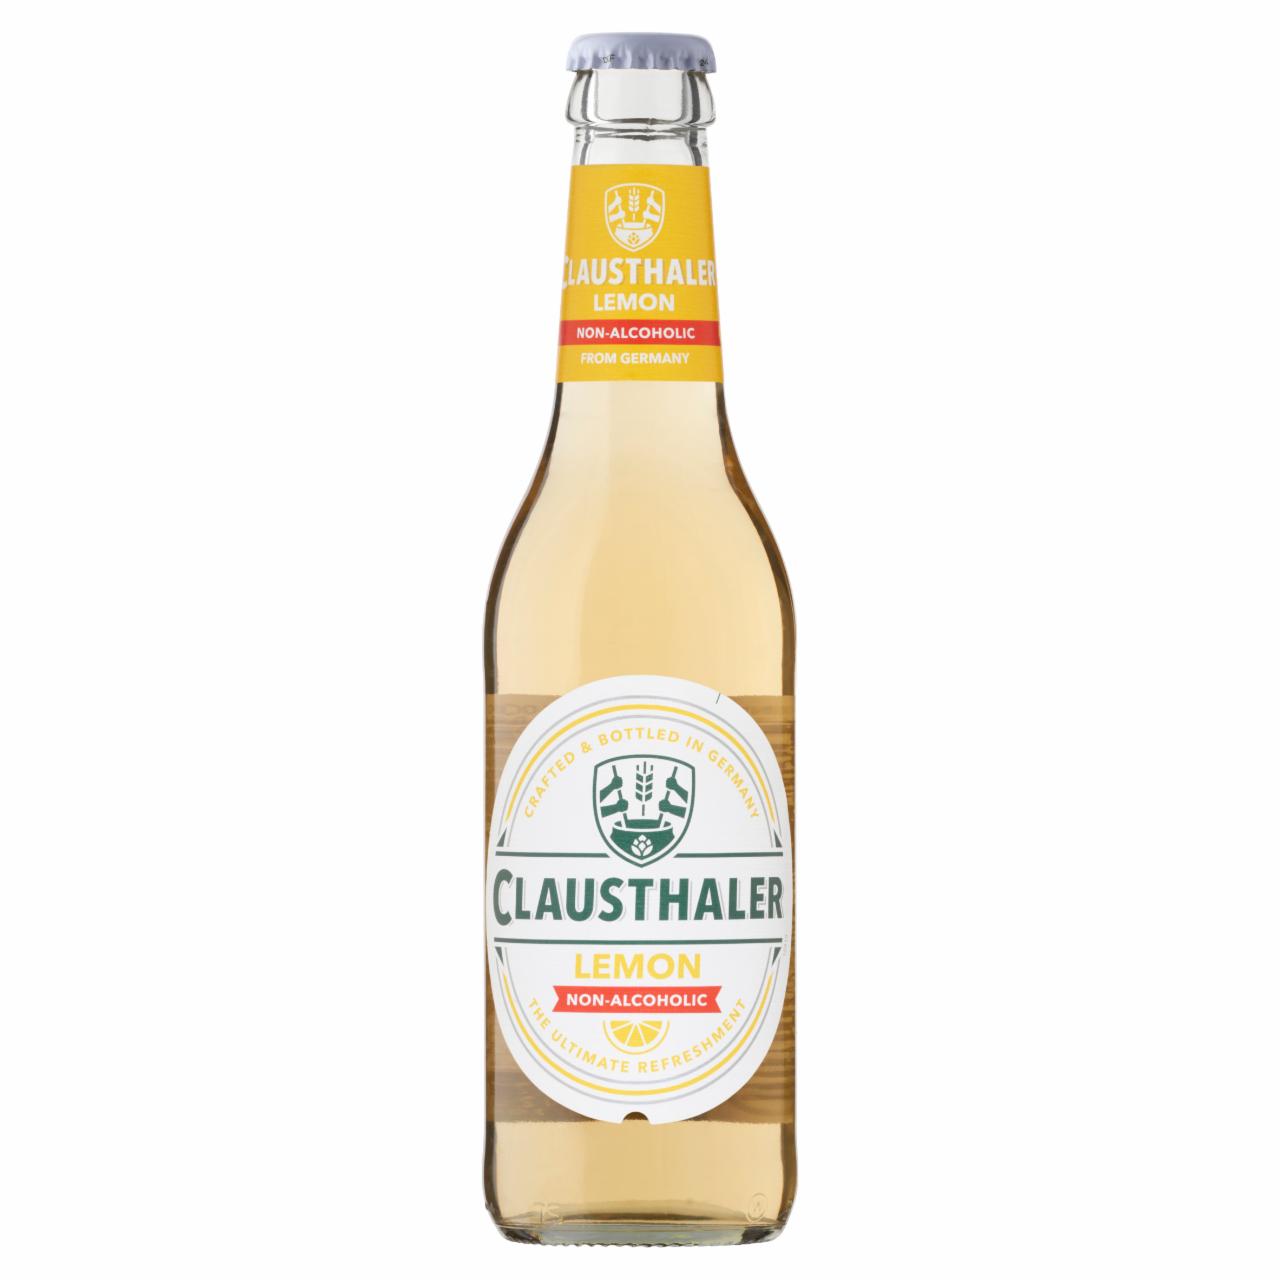 Képek - Clausthaler Lemon alkoholmentes világos citromos palackos sör 0,33 l